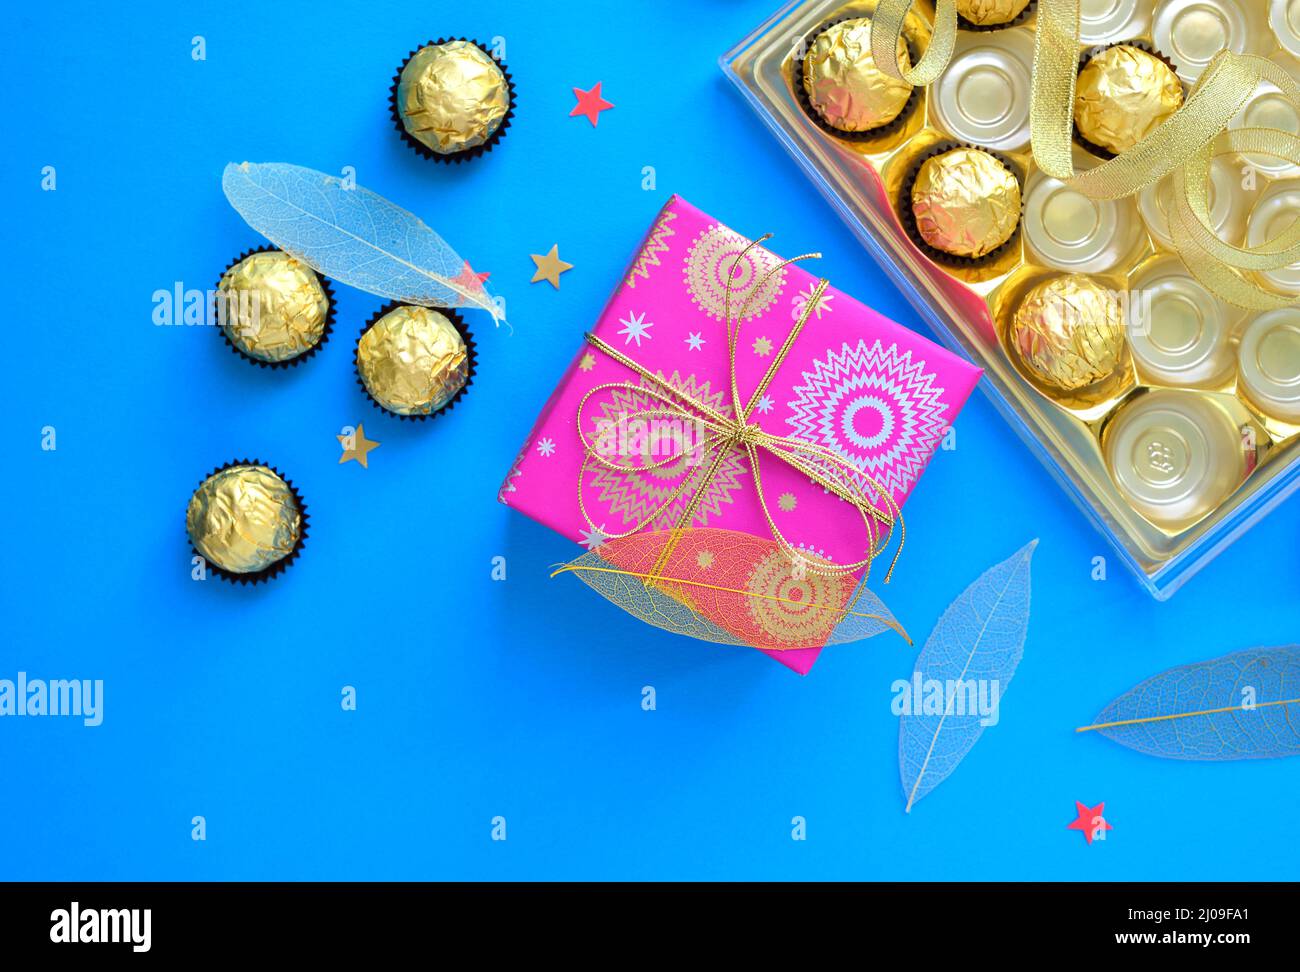 Belle photo de chocolats et une boîte cadeau avec des confettis autour. Vue de dessus d'une boîte de plateau de chocolat et d'une boîte cadeau emballée. Banque D'Images